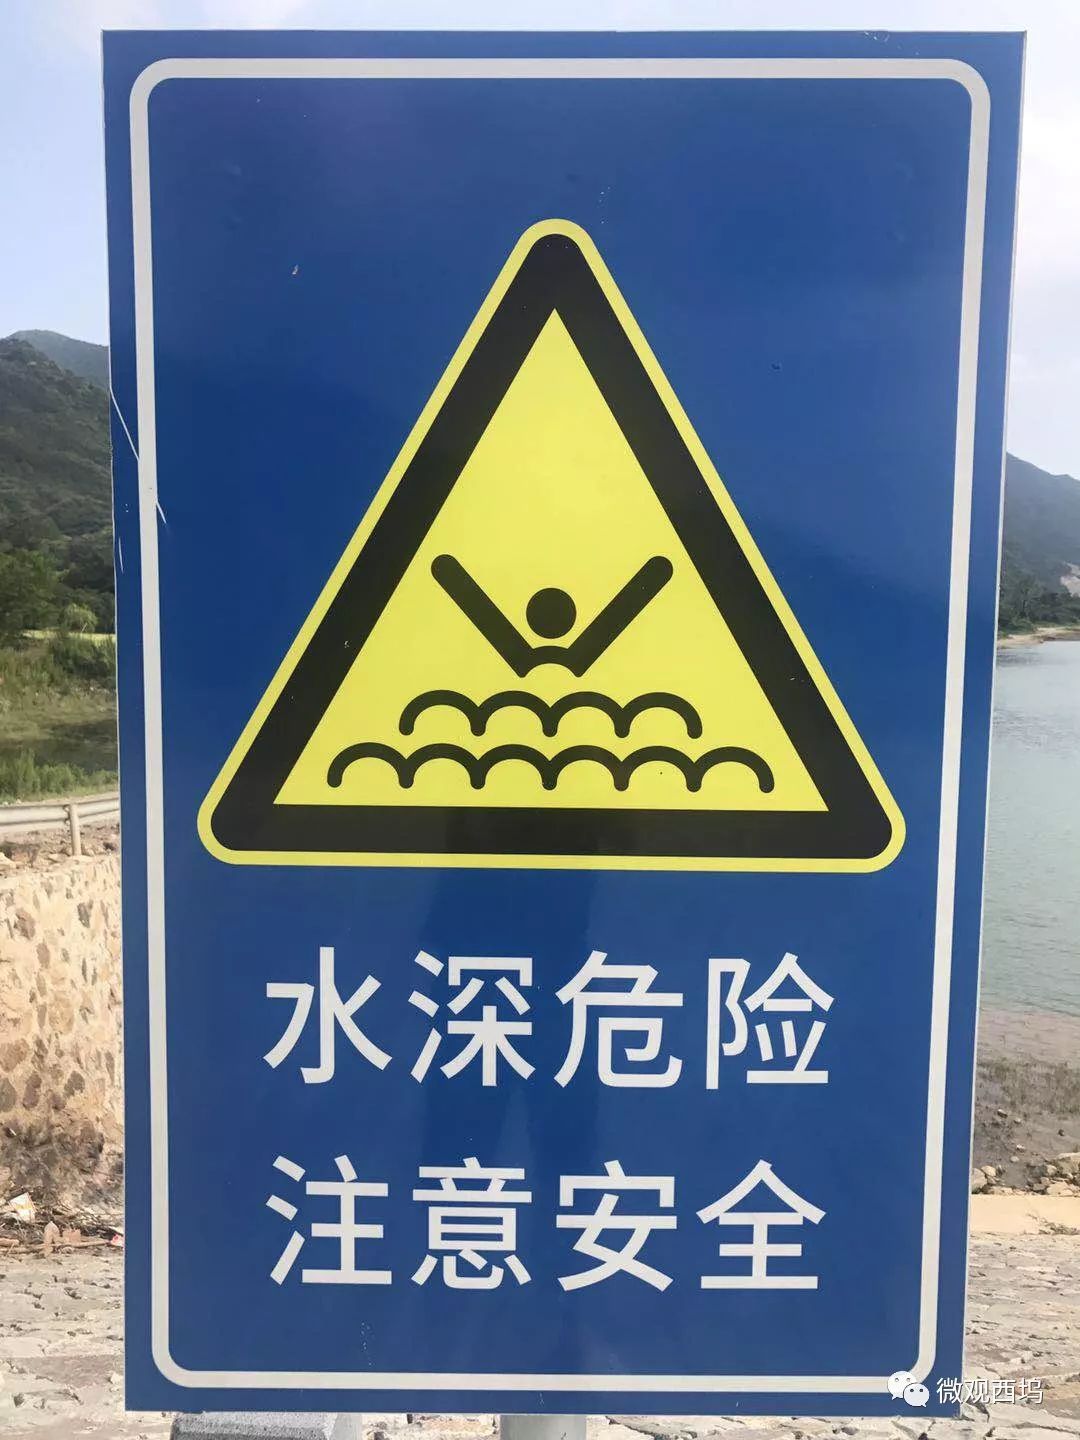 告示注意啦西坞辖区内水库禁止游泳